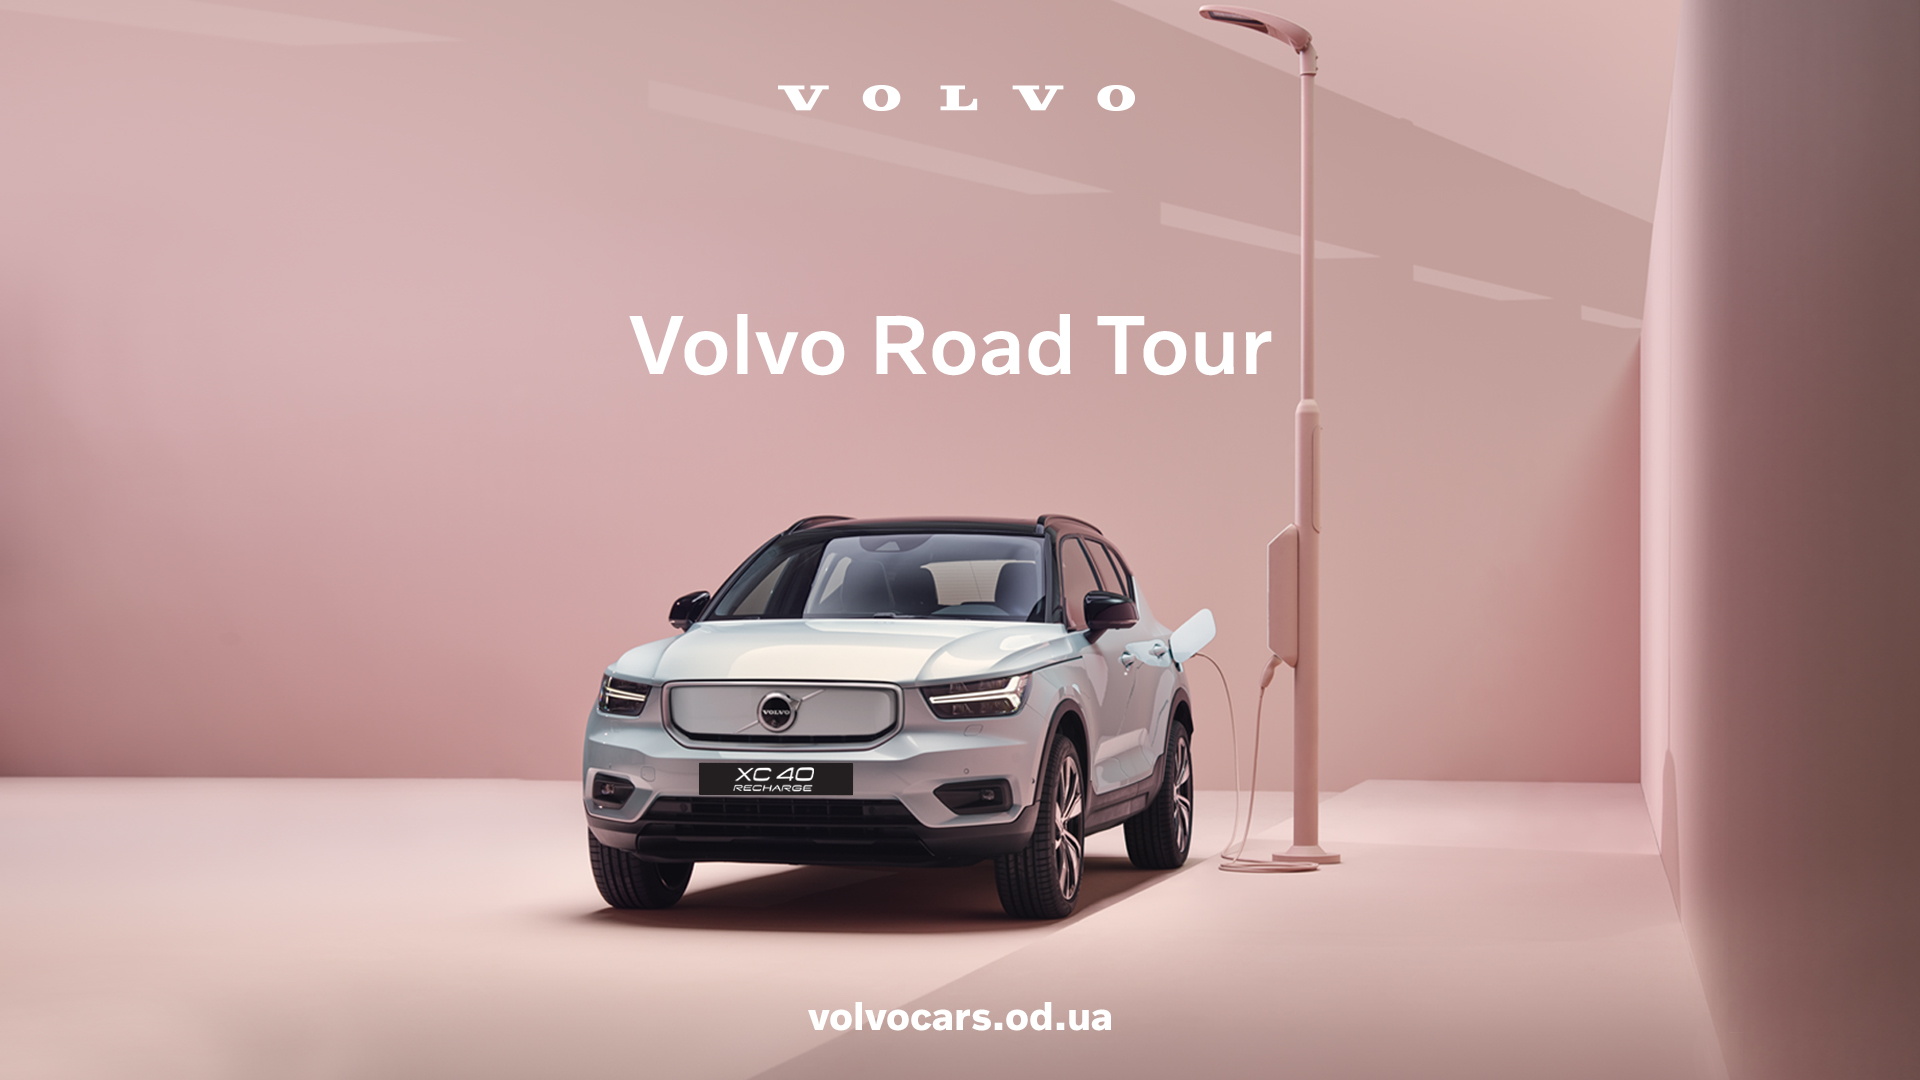 В Україні вже стартував Volvo Road Tour!